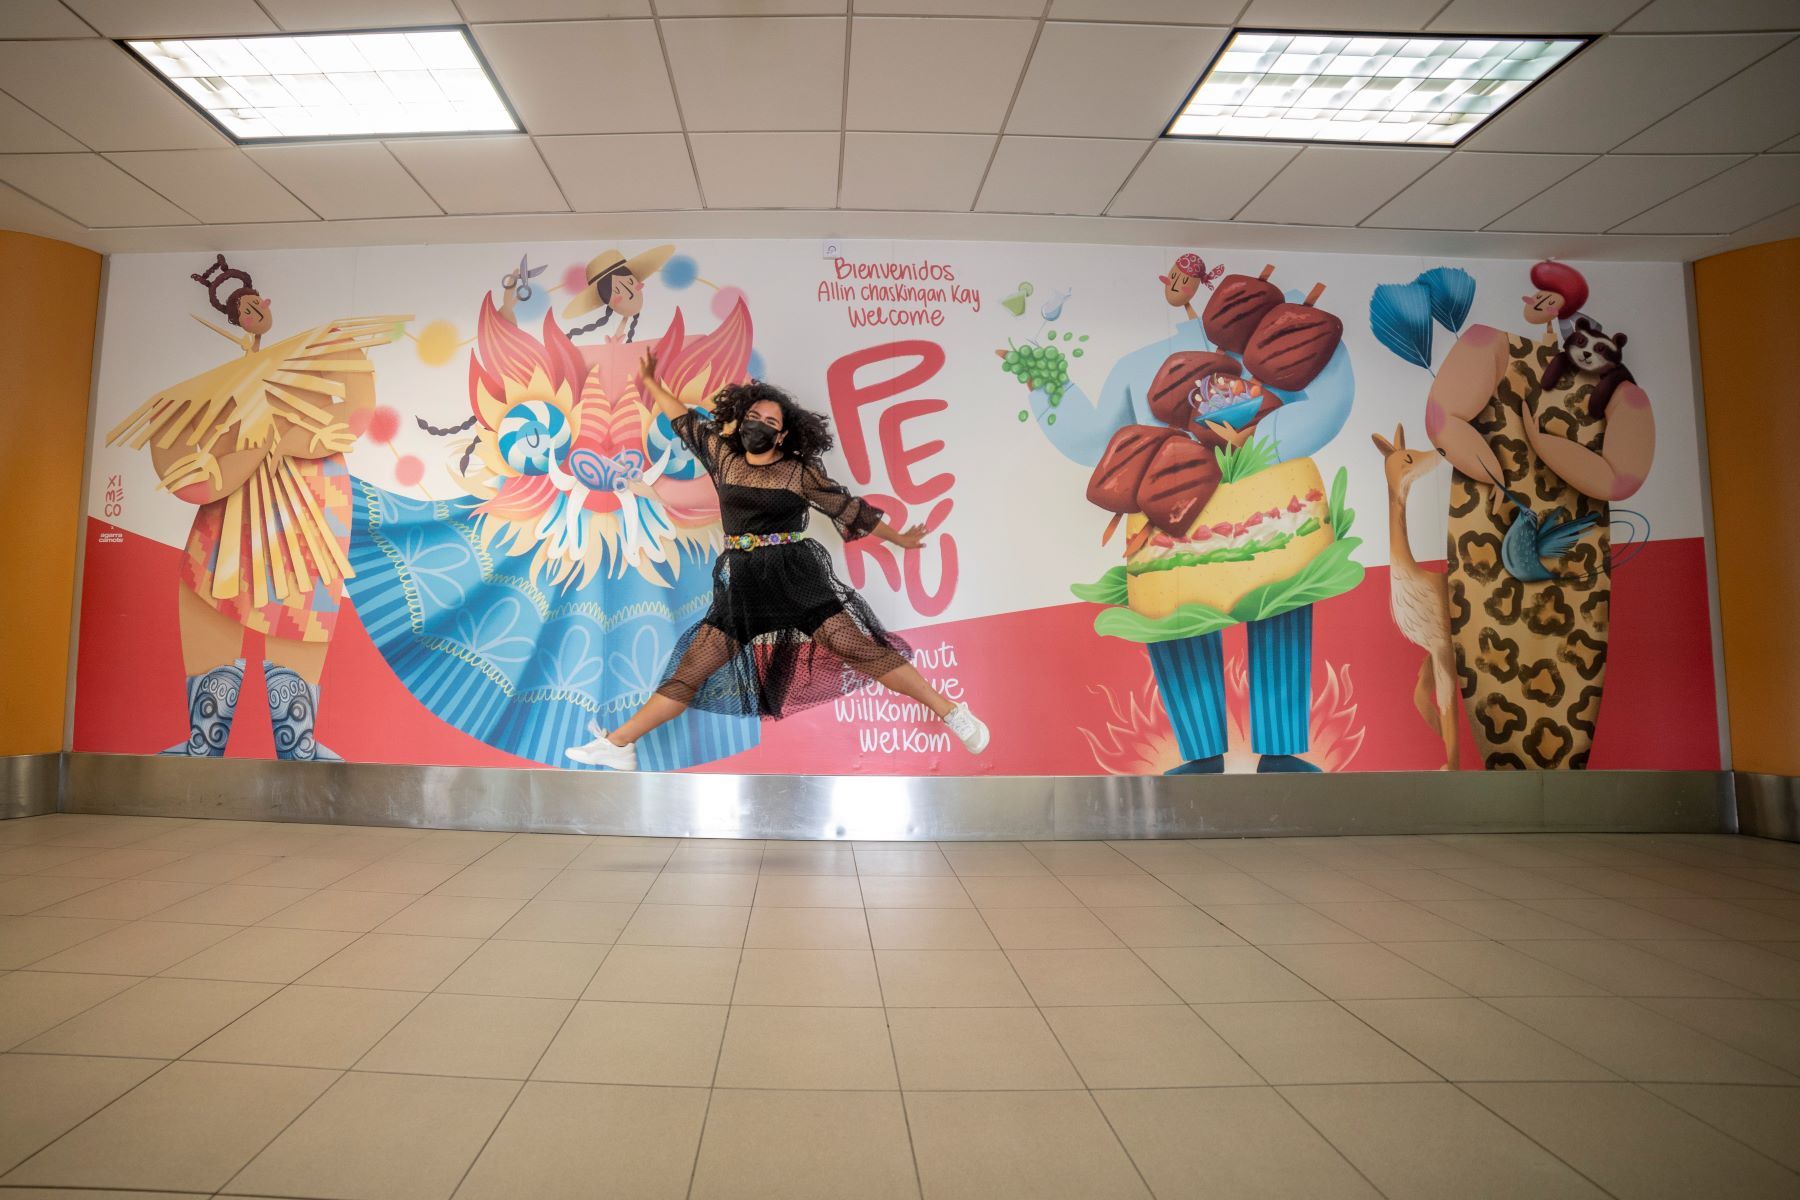 LAP celebra Día de la Mujer con inauguración de murales artísticos “Ellas vuelan alto”